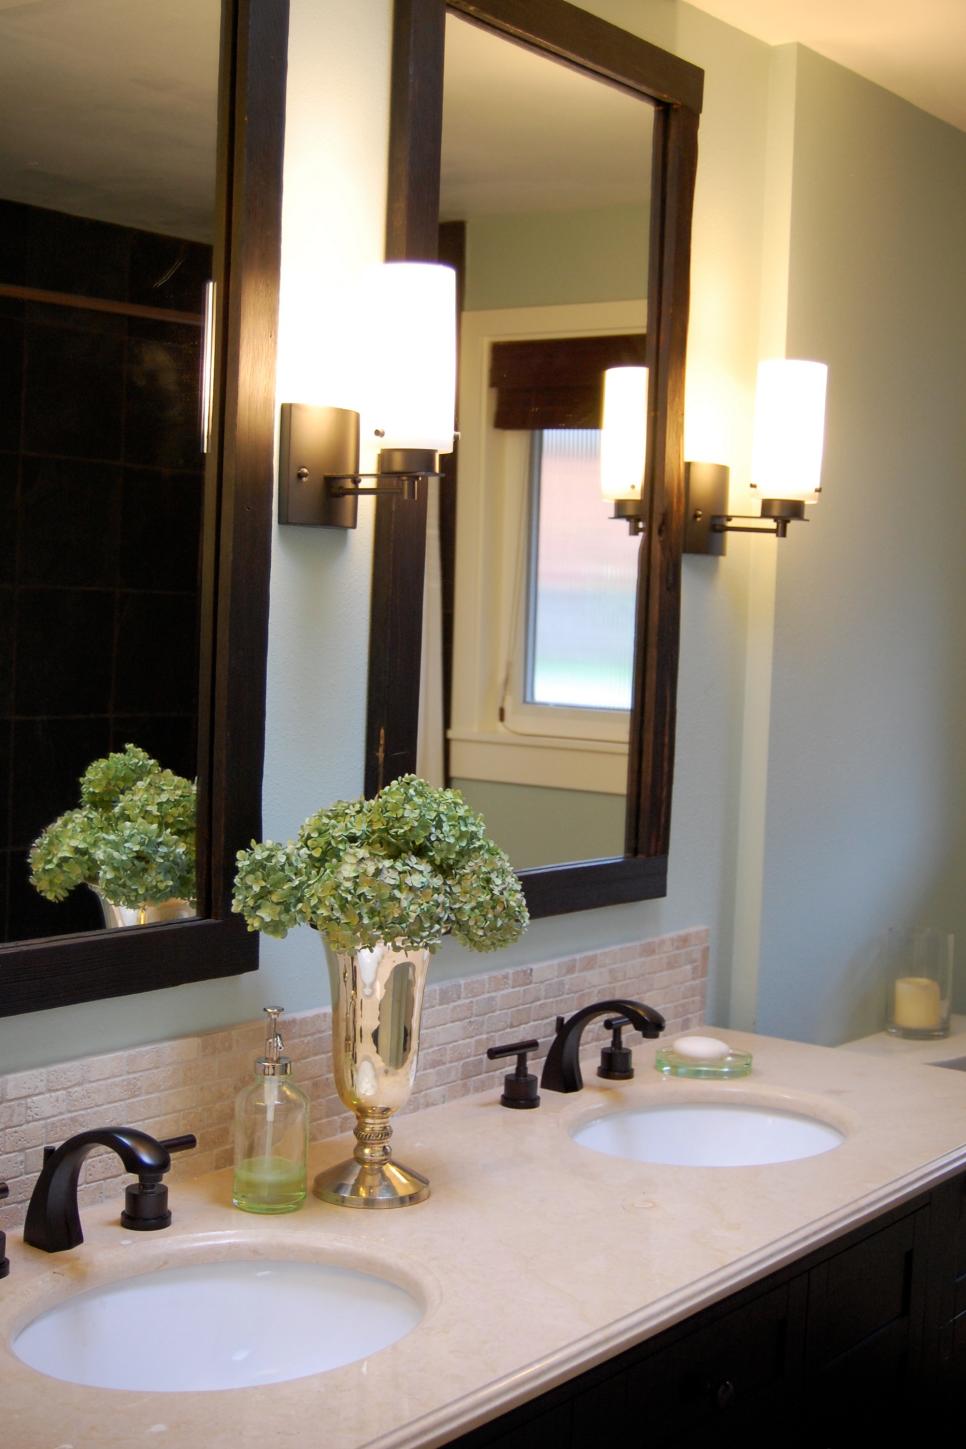 Wood Framed Mirrors and Bathroom Vanity Countertop | HGTV